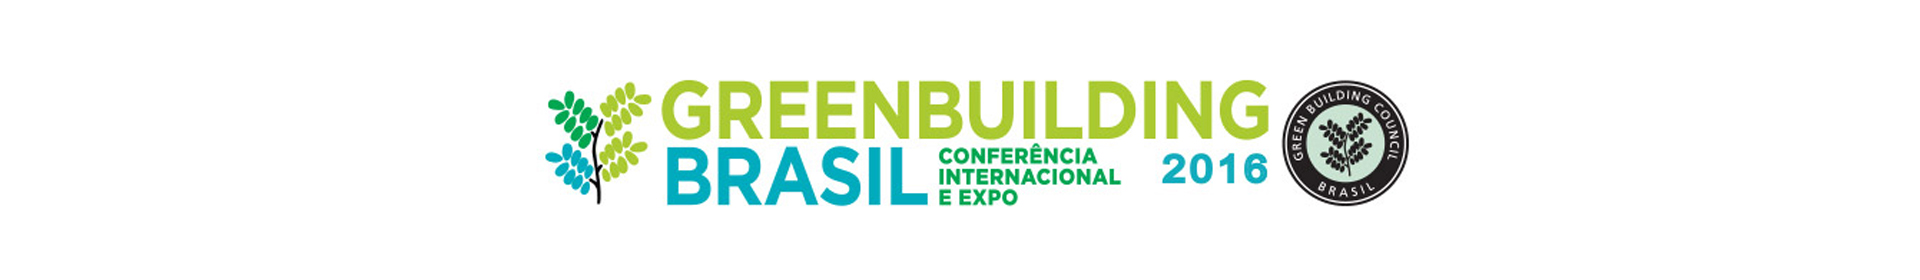 Greenbuilding Brasil Event Banner